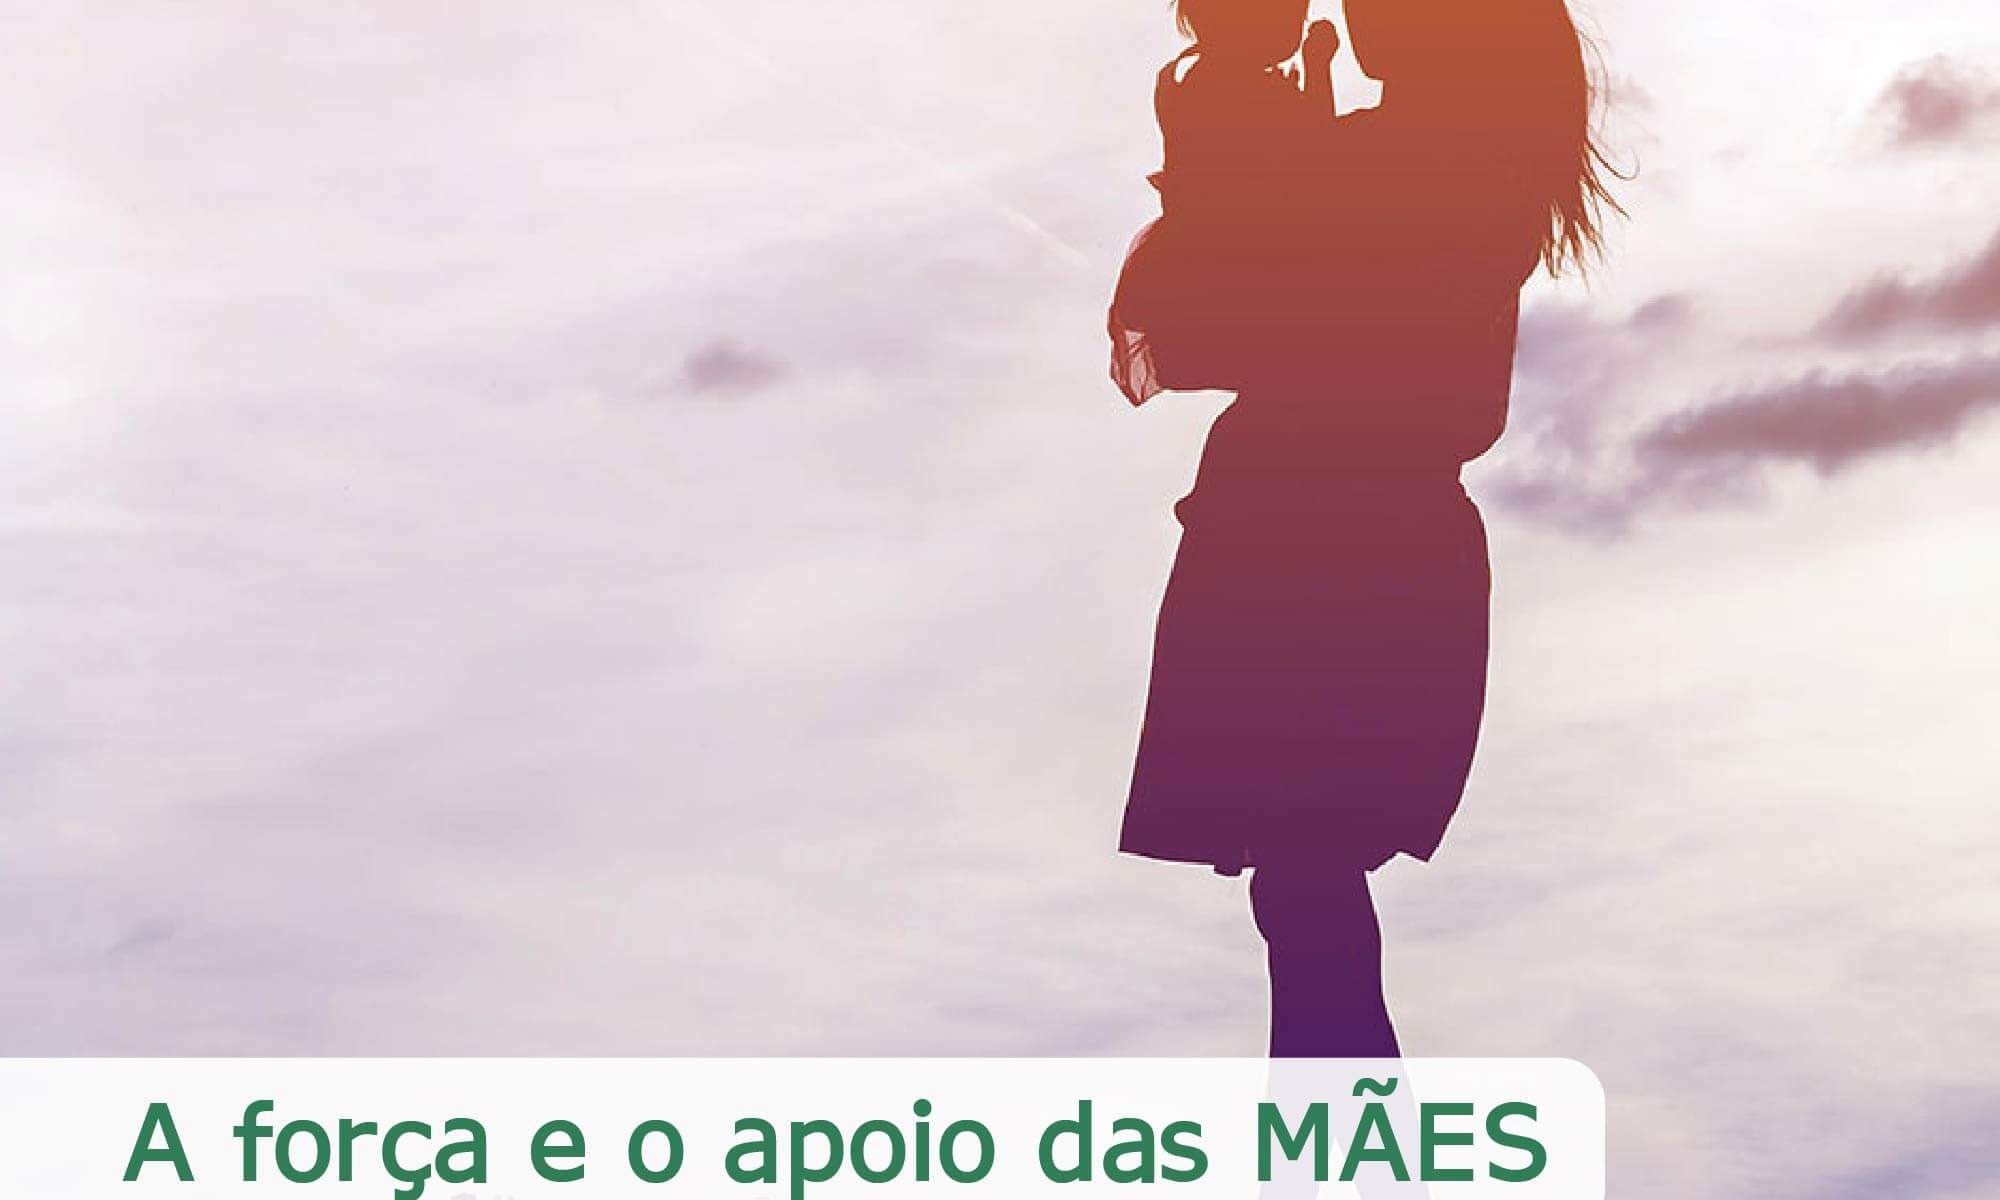 #DescriçãoDaImagem imagem ilustrativa. A imagem mostra uma mãe carregando uma criança no colo. Está escrito "A força e o apoio das mães" #historiasdevida e a logo da Retina Brasil está no canto inferior direito.